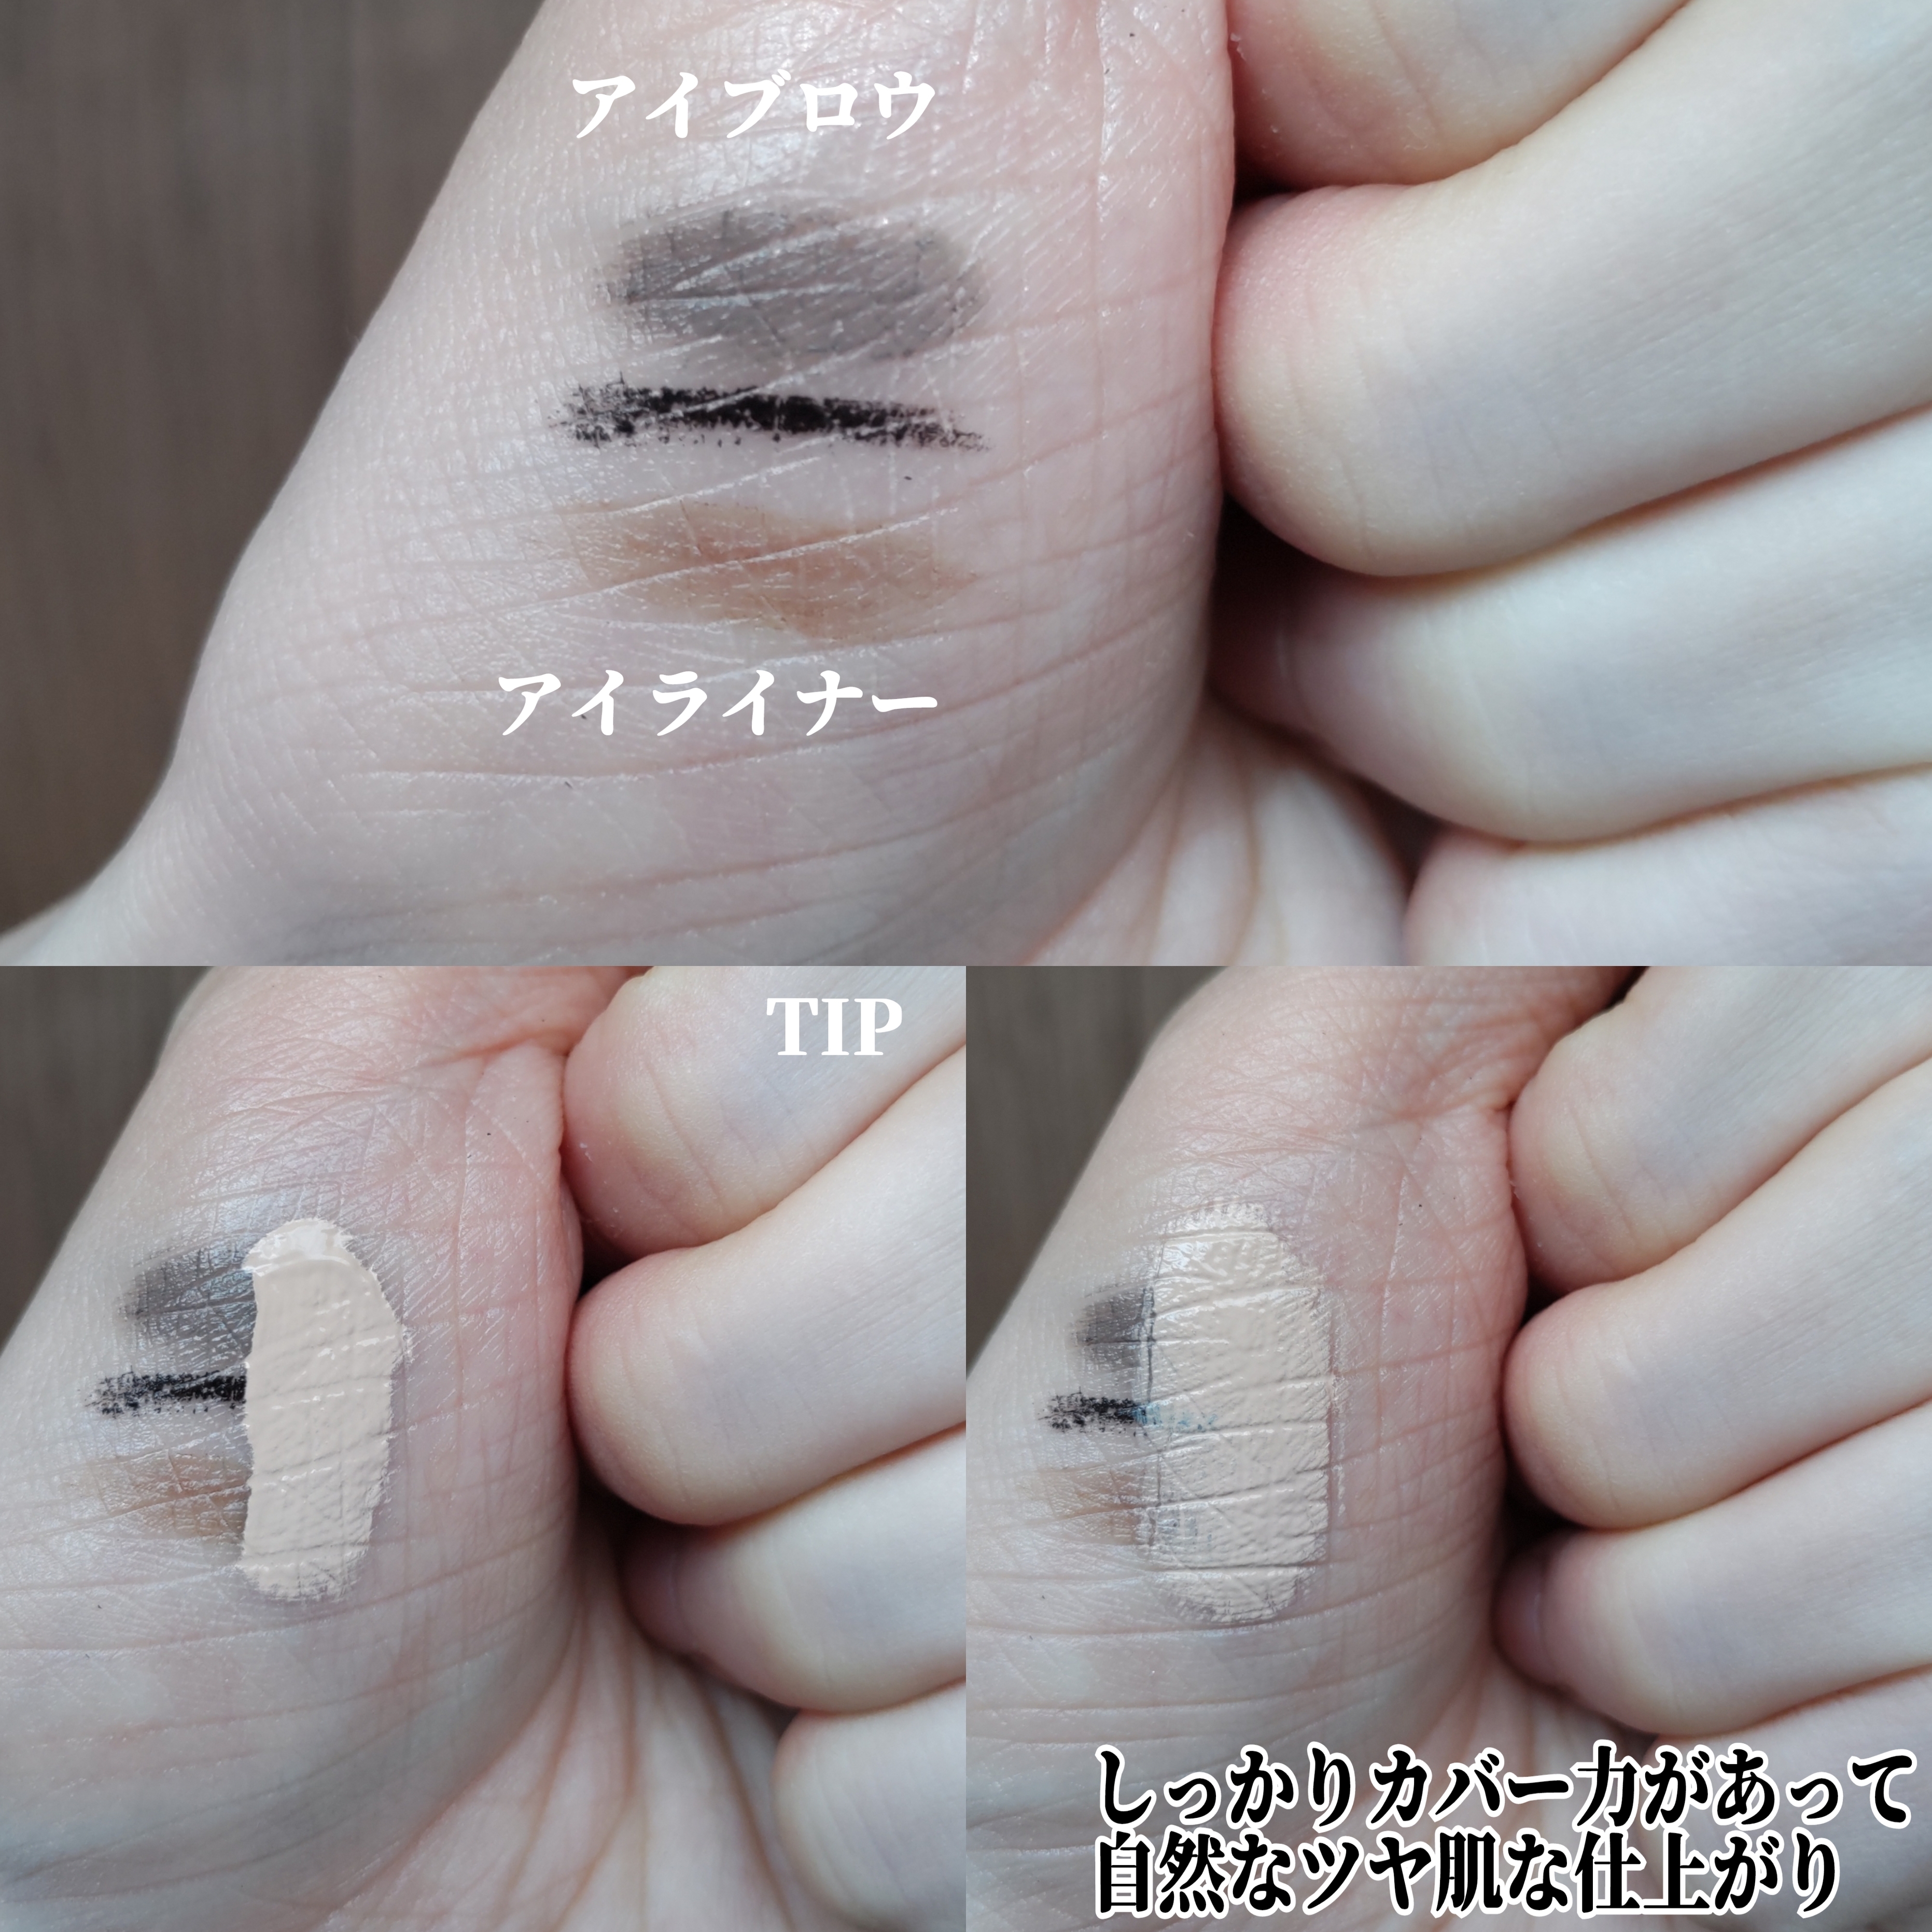 マスクフィットオールカバーデュアルコンシーラーを使ったYuKaRi♡さんのクチコミ画像5